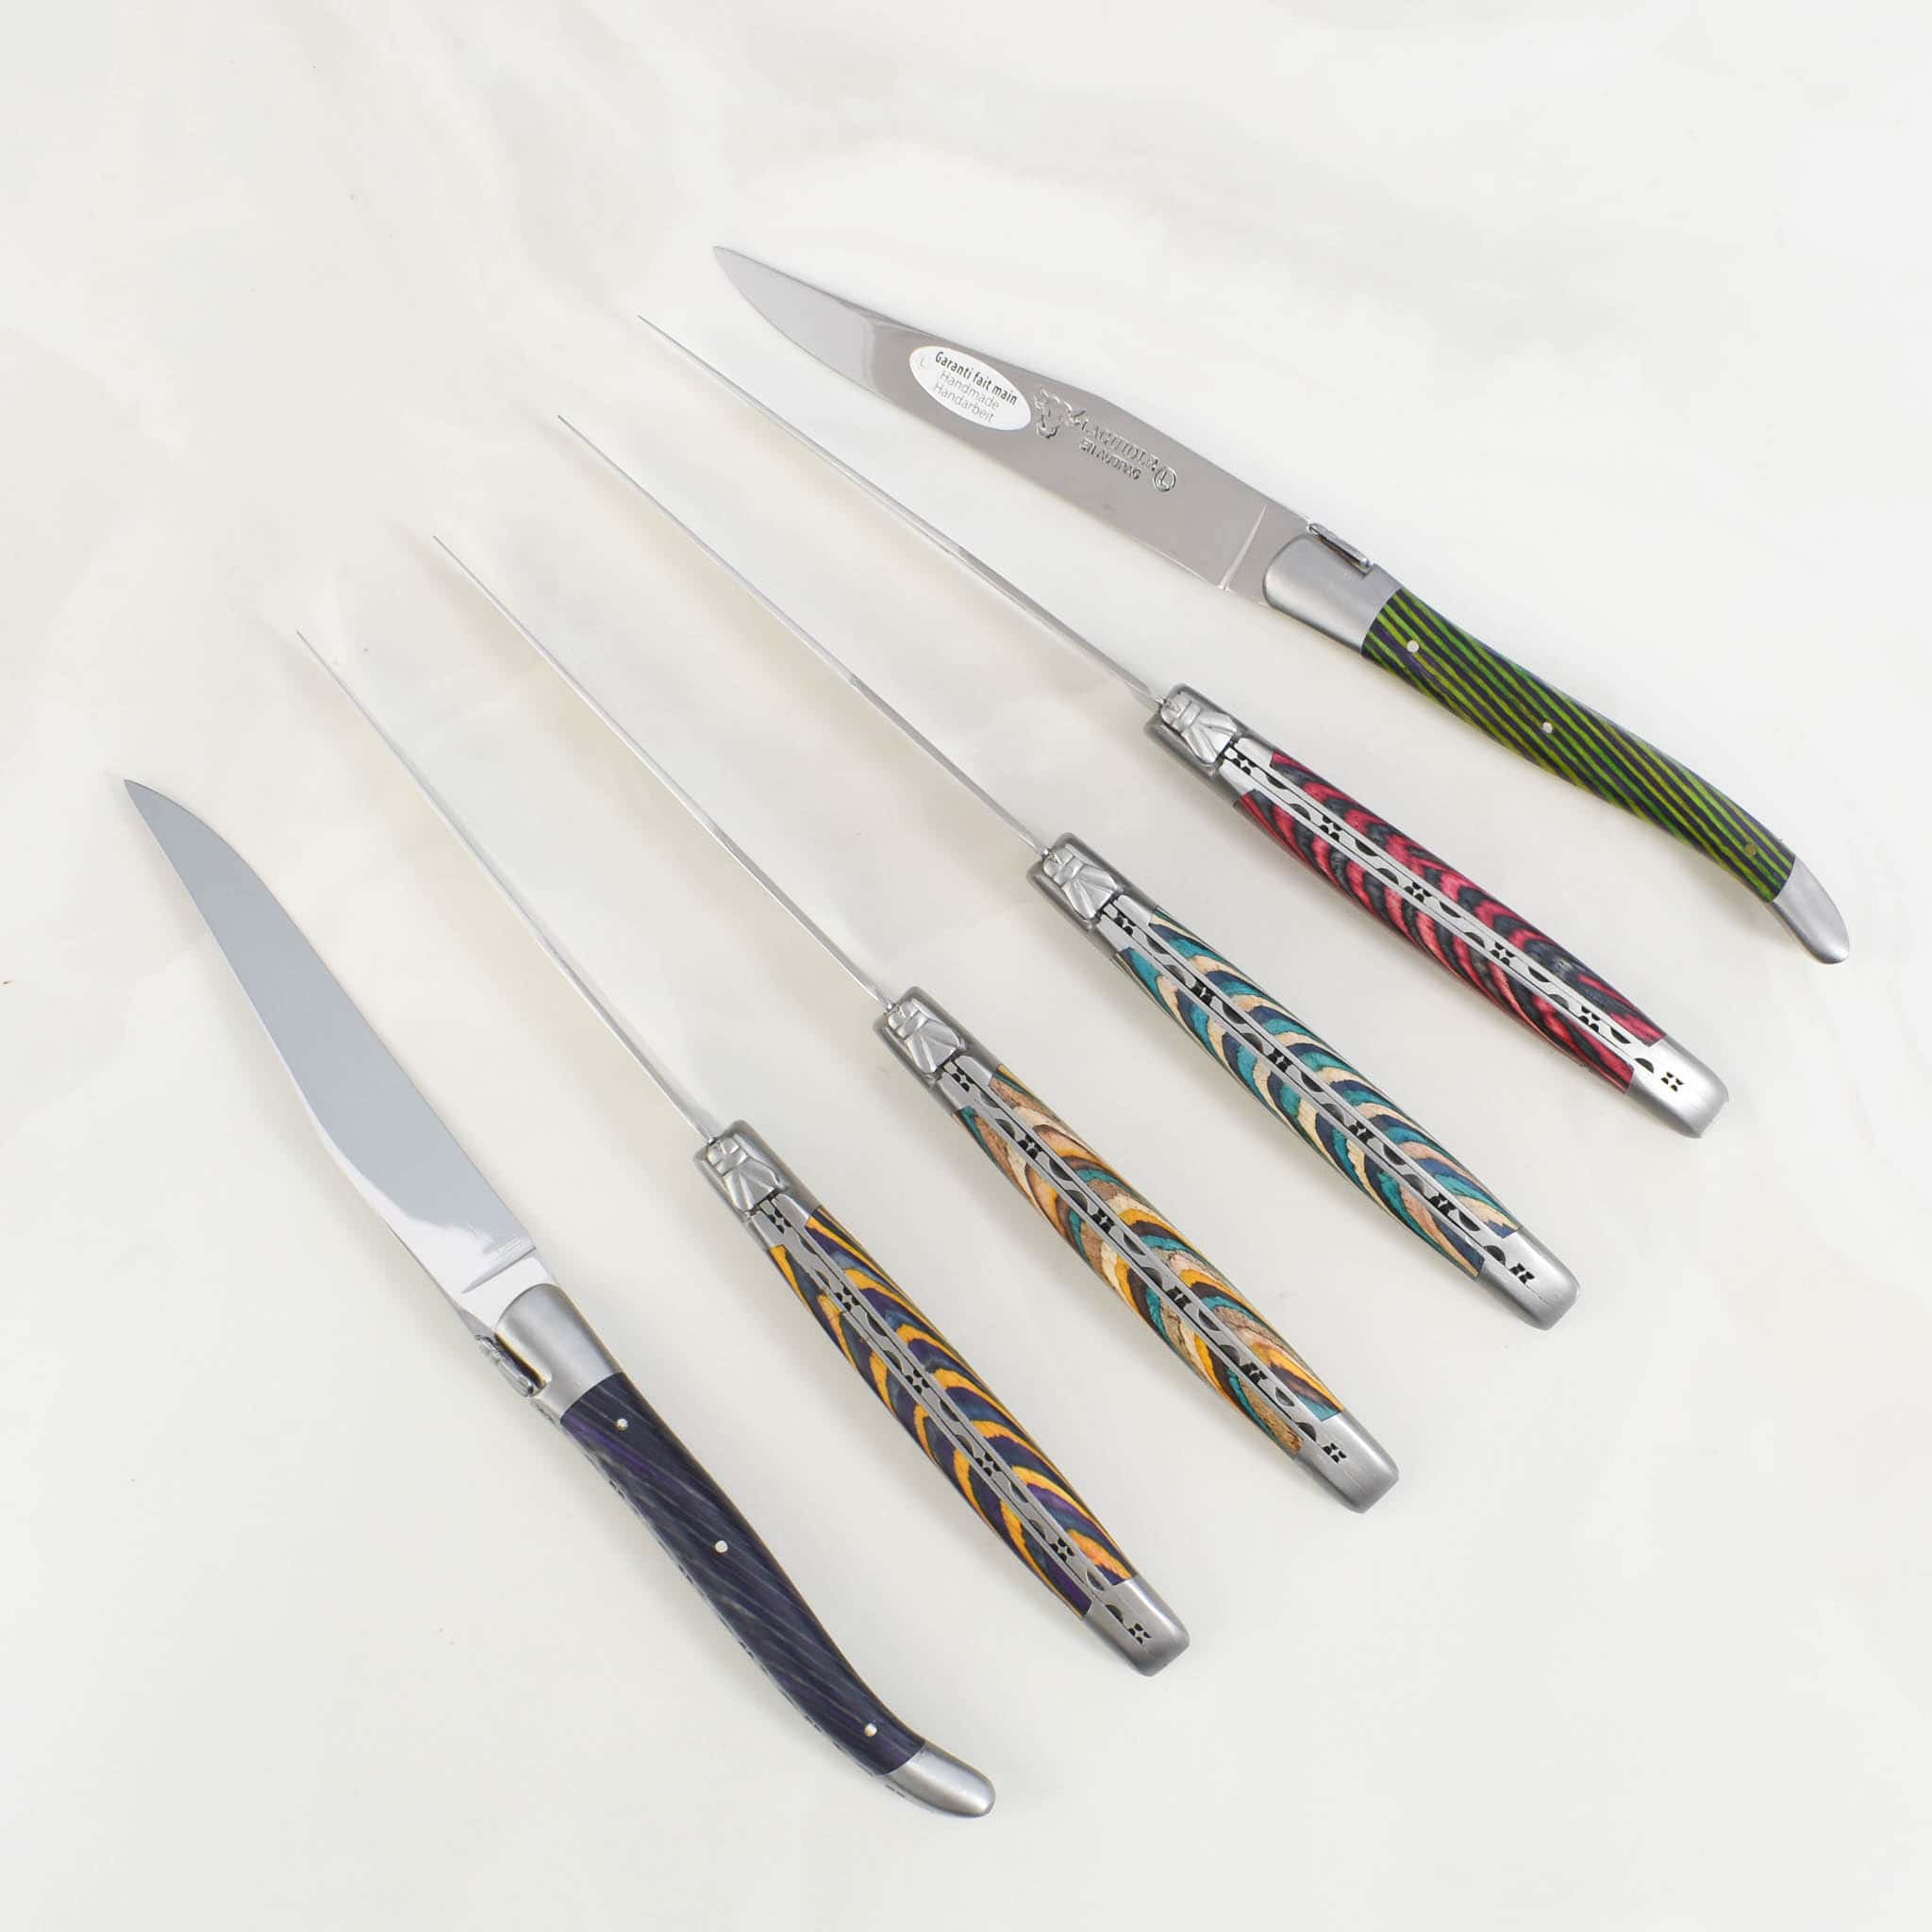 Laguiole en Aubrac Set of 6 Steak Knives, Striped Wood